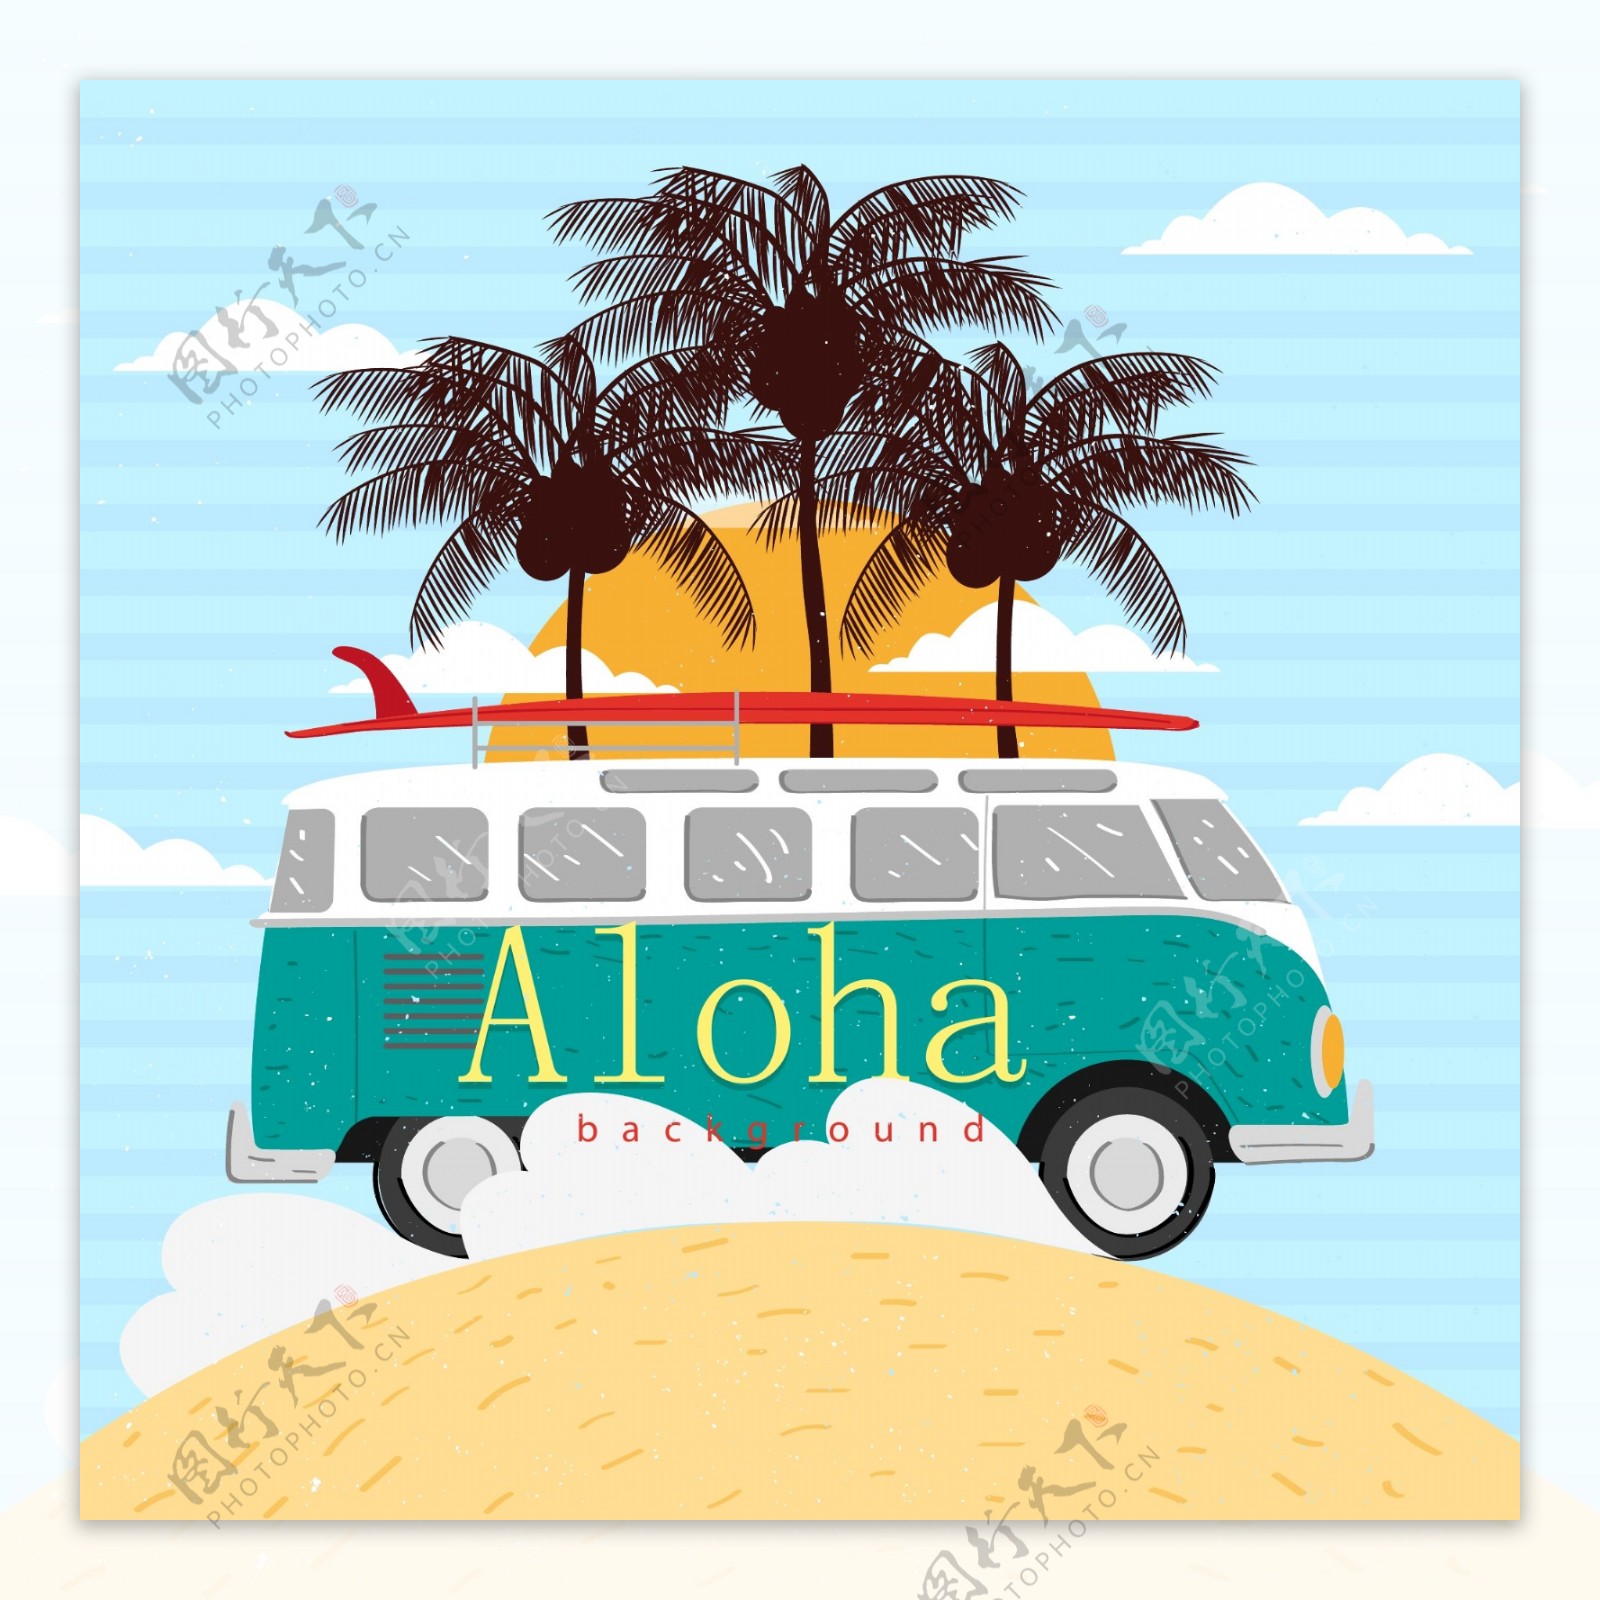 创意夏威夷沙滩度假车矢量素材